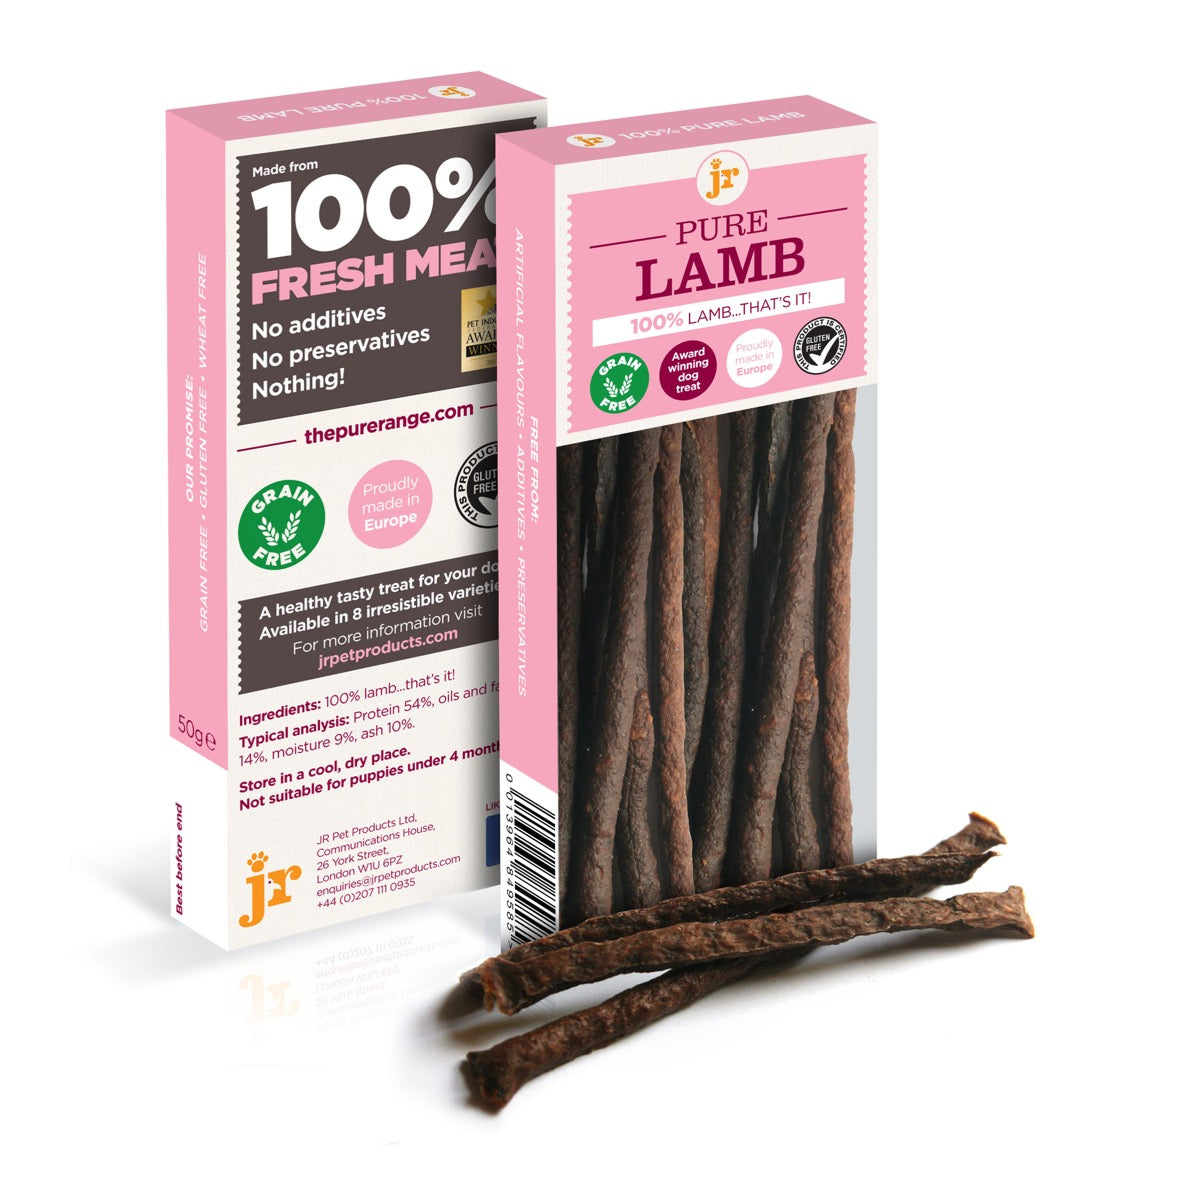 JR - Lamb Meat Sticks - 50g